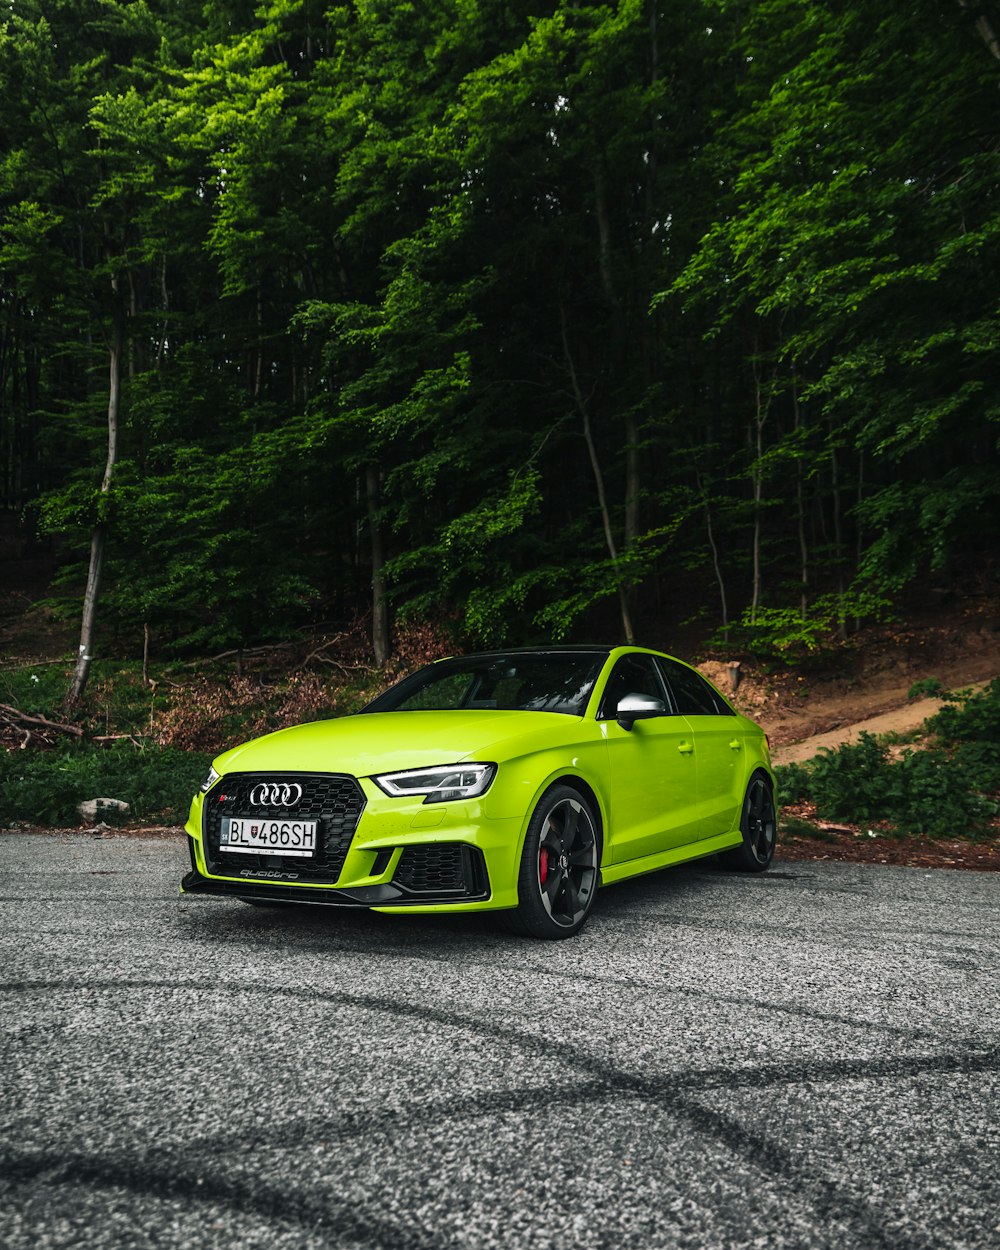 Audi coupé verde su strada durante il giorno